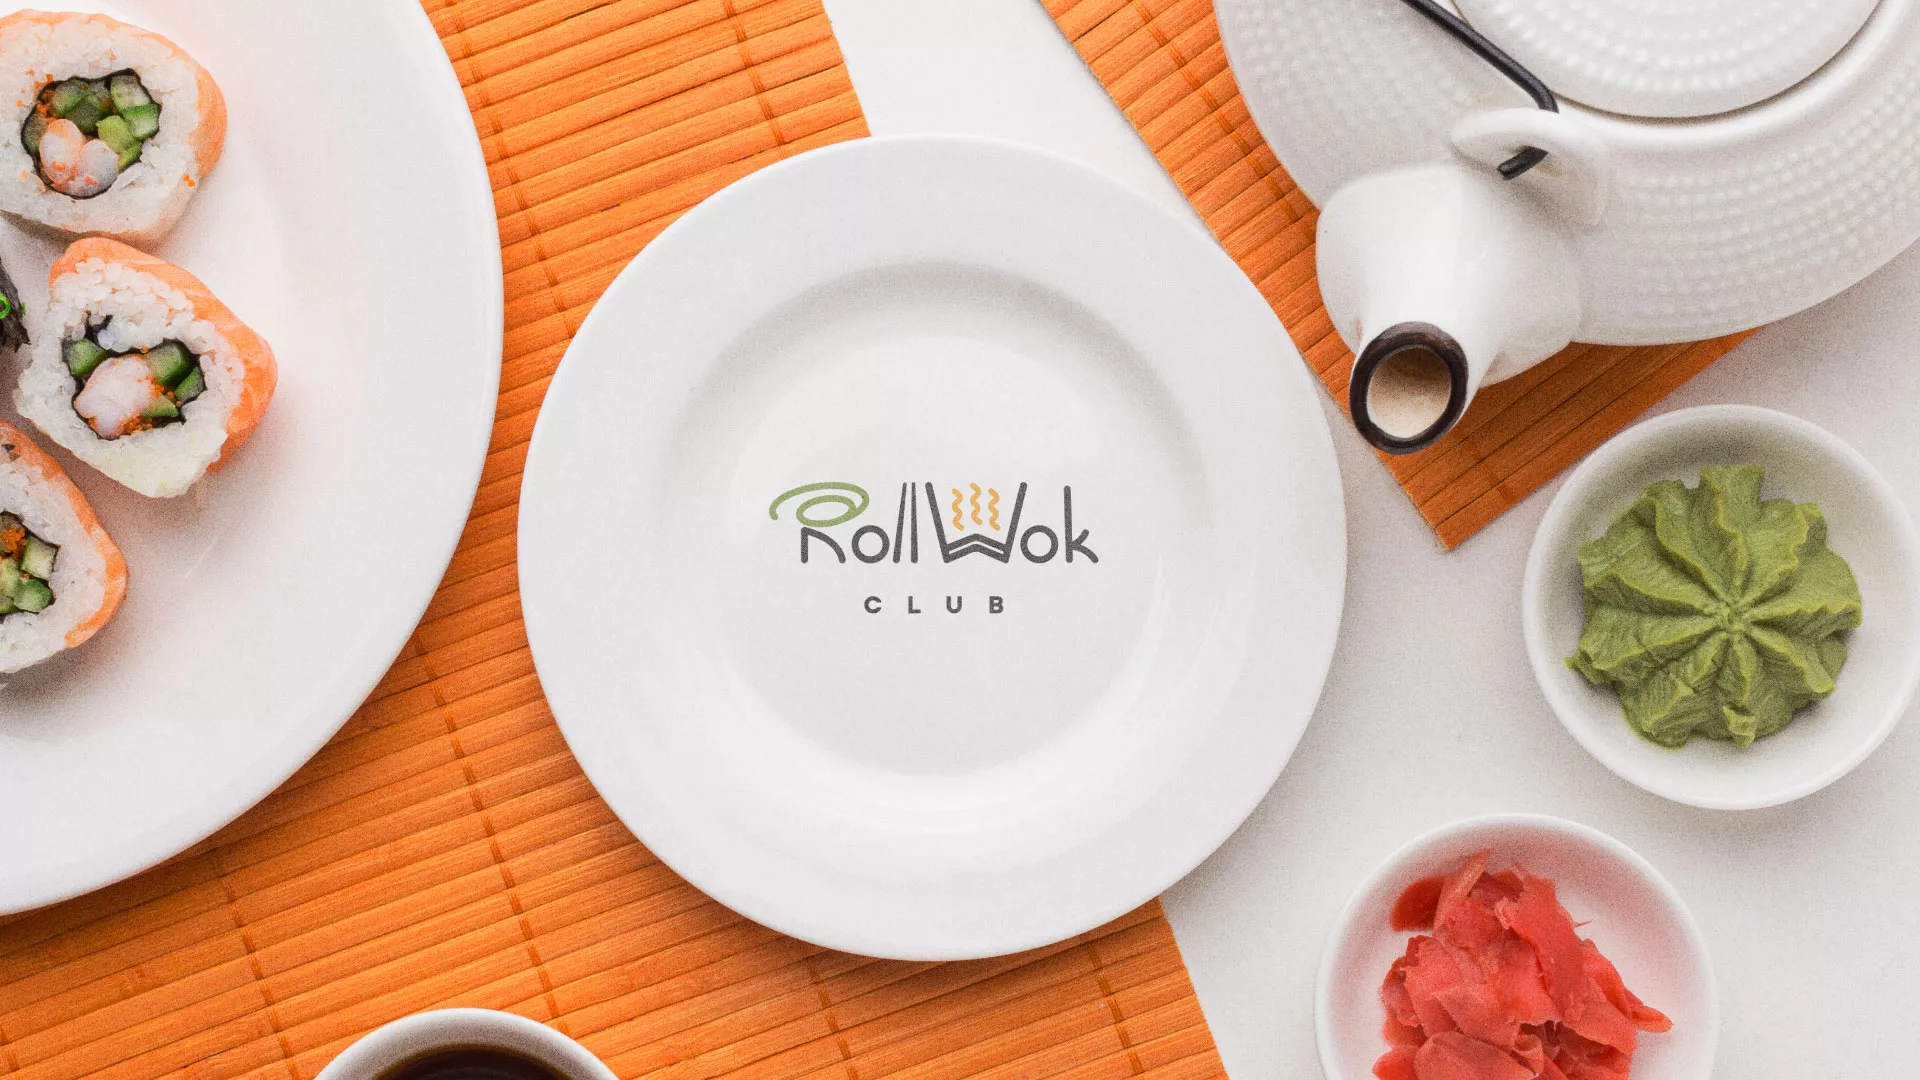 Разработка логотипа и фирменного стиля суши-бара «Roll Wok Club» в Чулыме